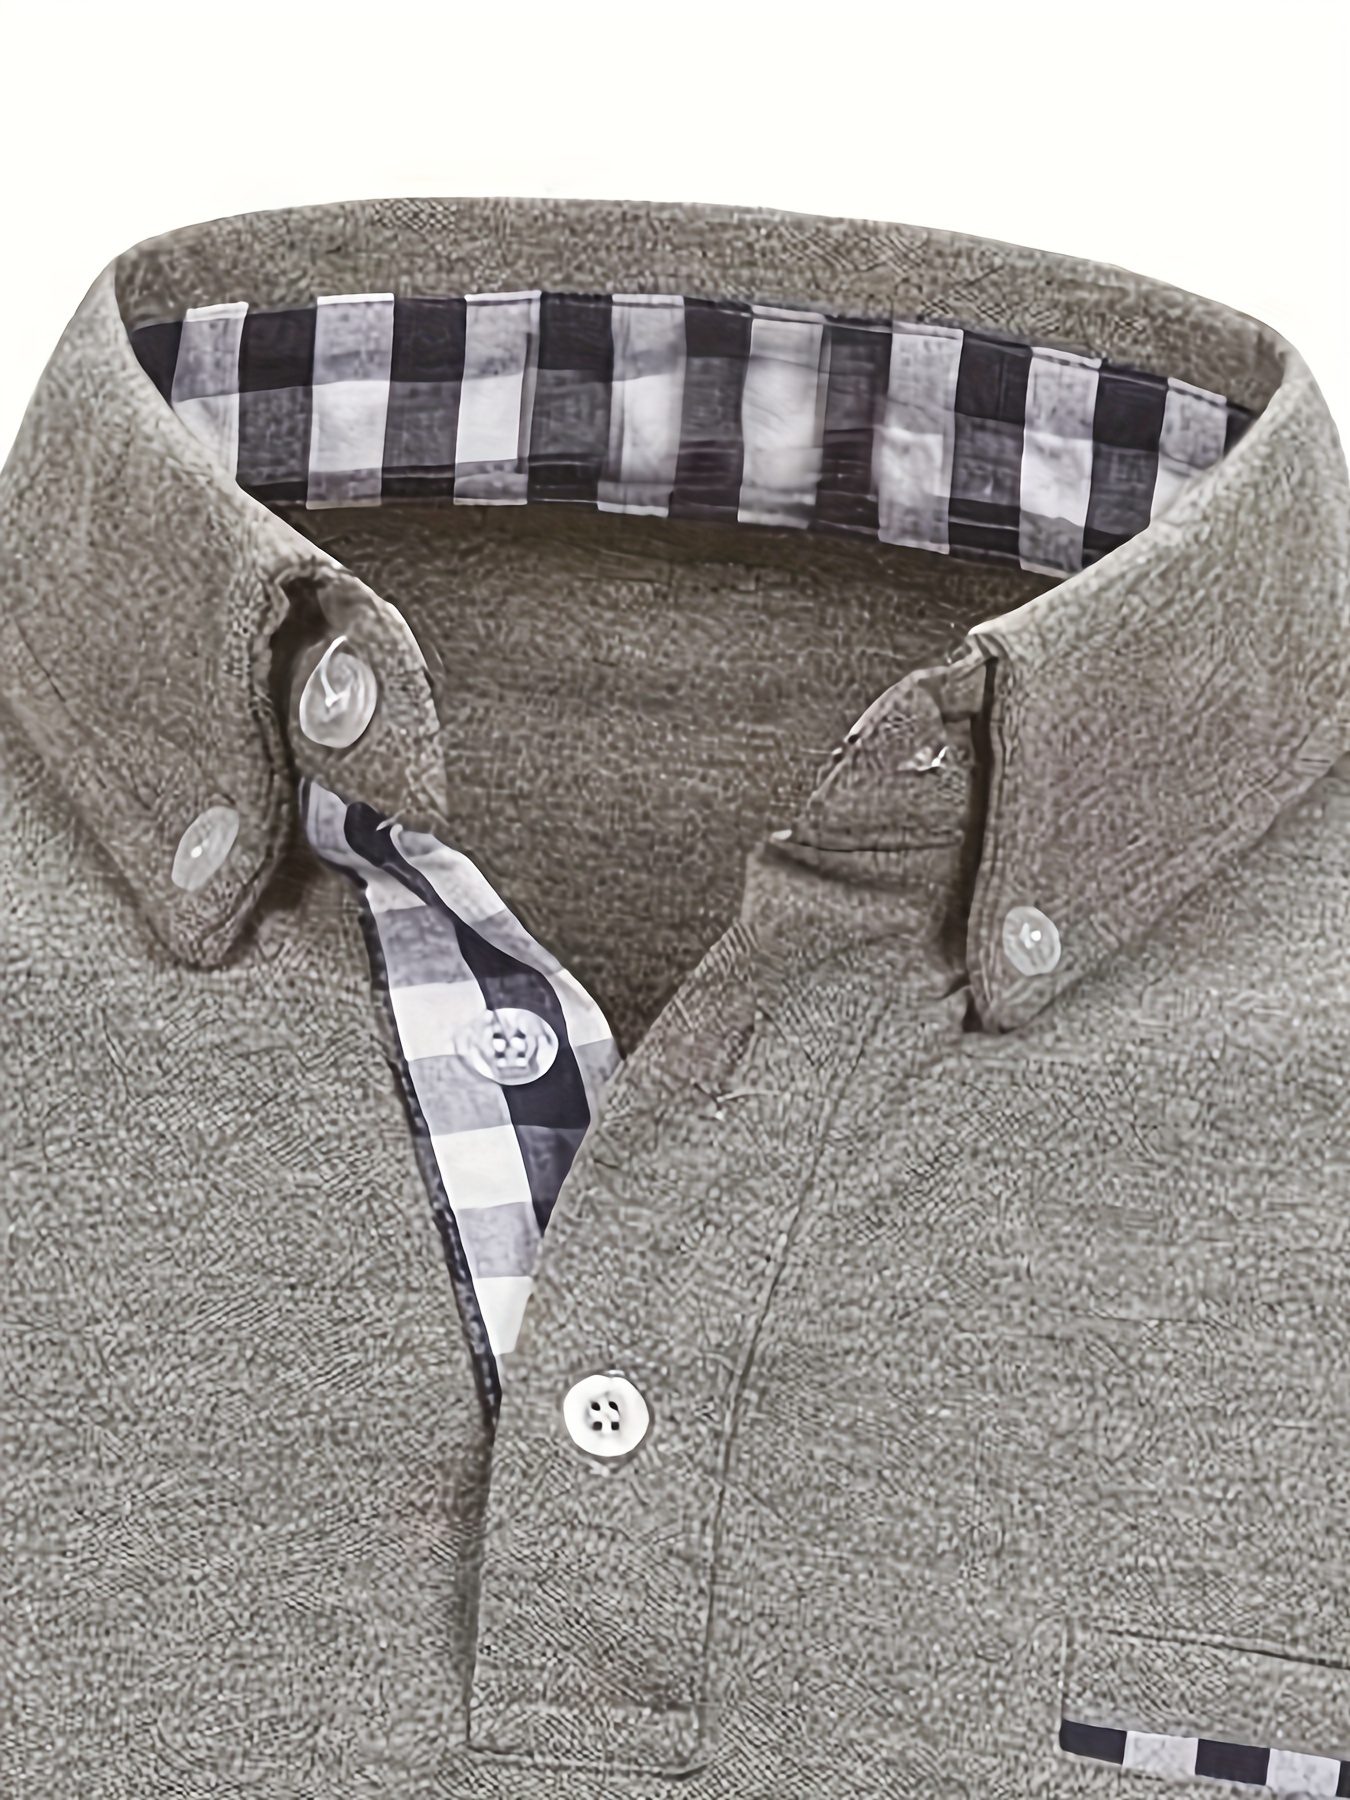 Camisa intermediária de algodão, casual com remendos axadrezados, camisola com lapela de manga comprida, para primavera, verão detalhes 13